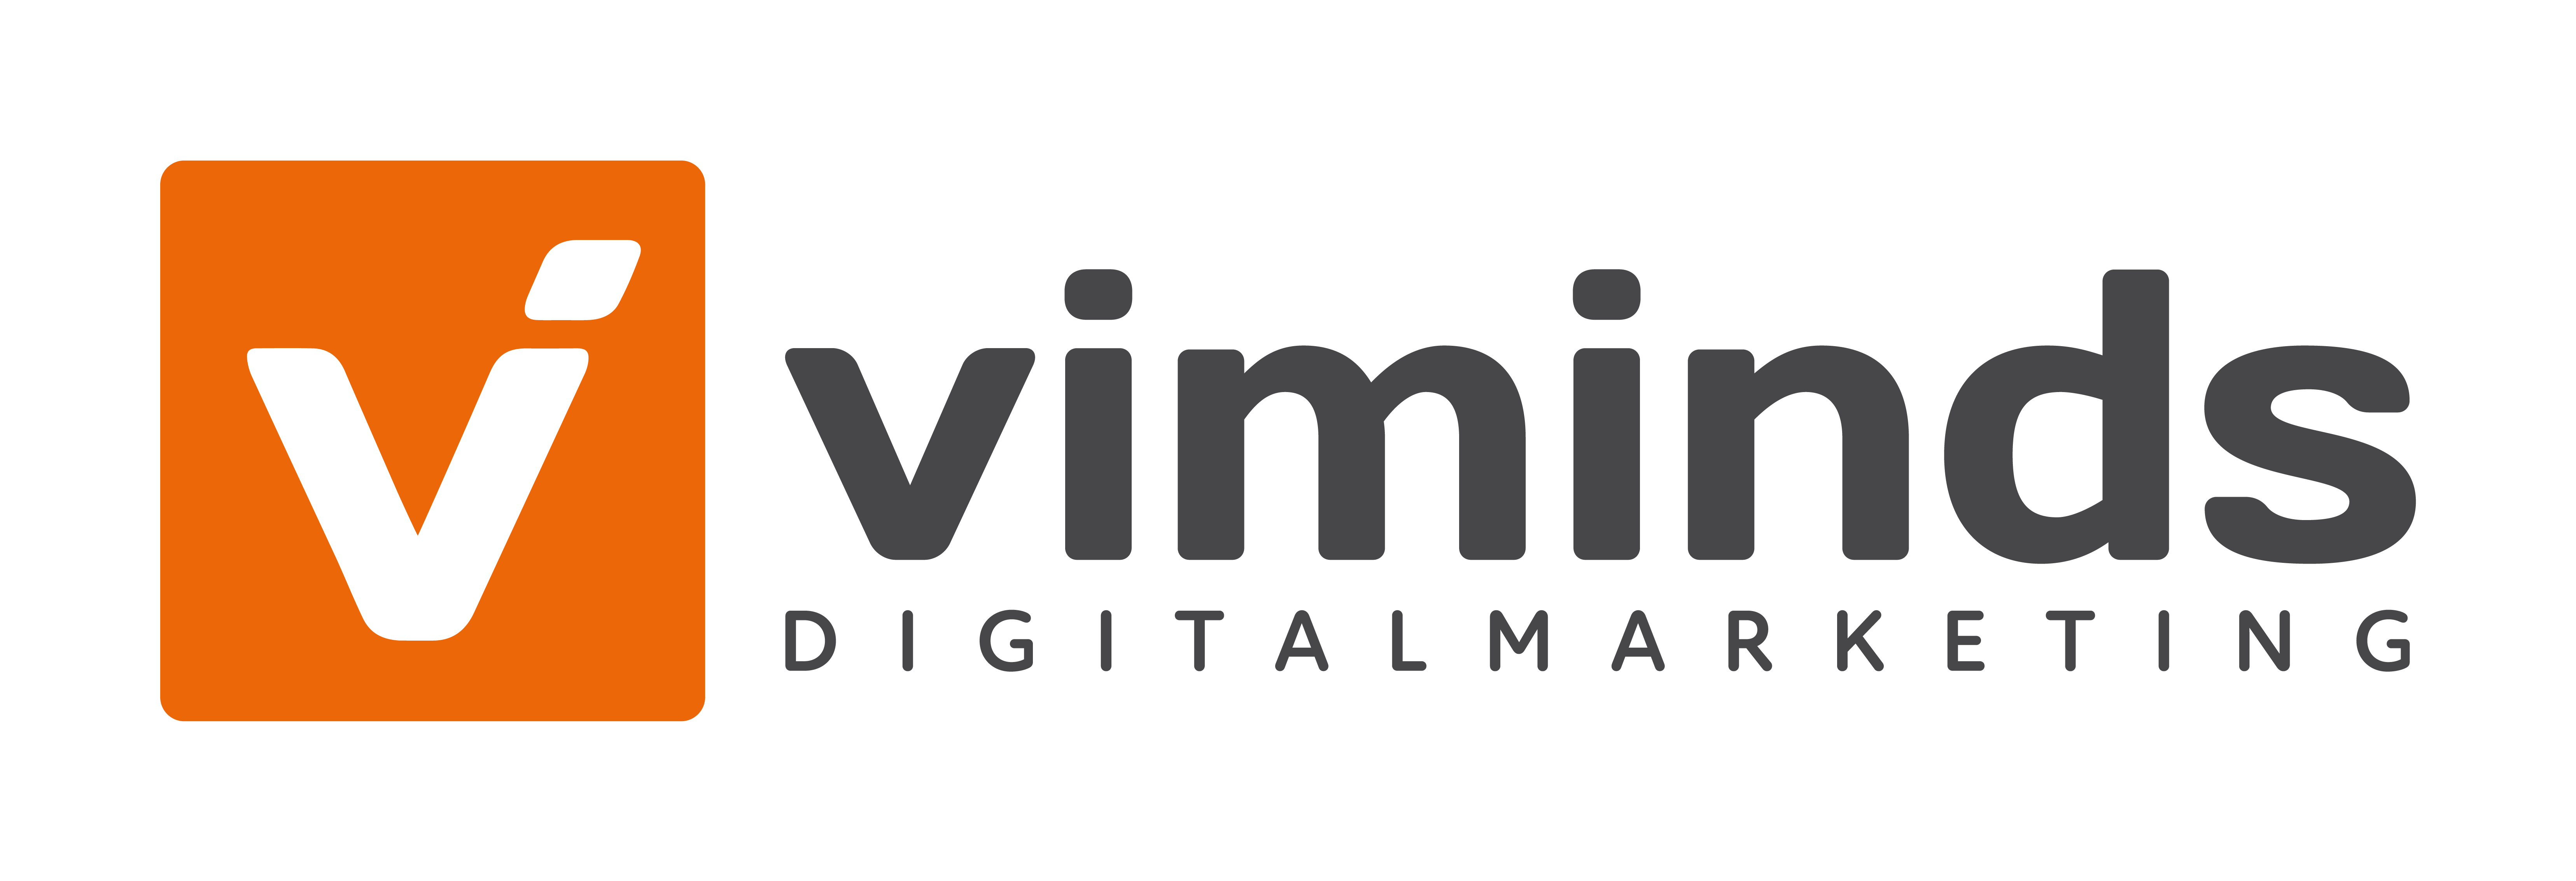 viminds-logo-bildwortmarke-4c@2x